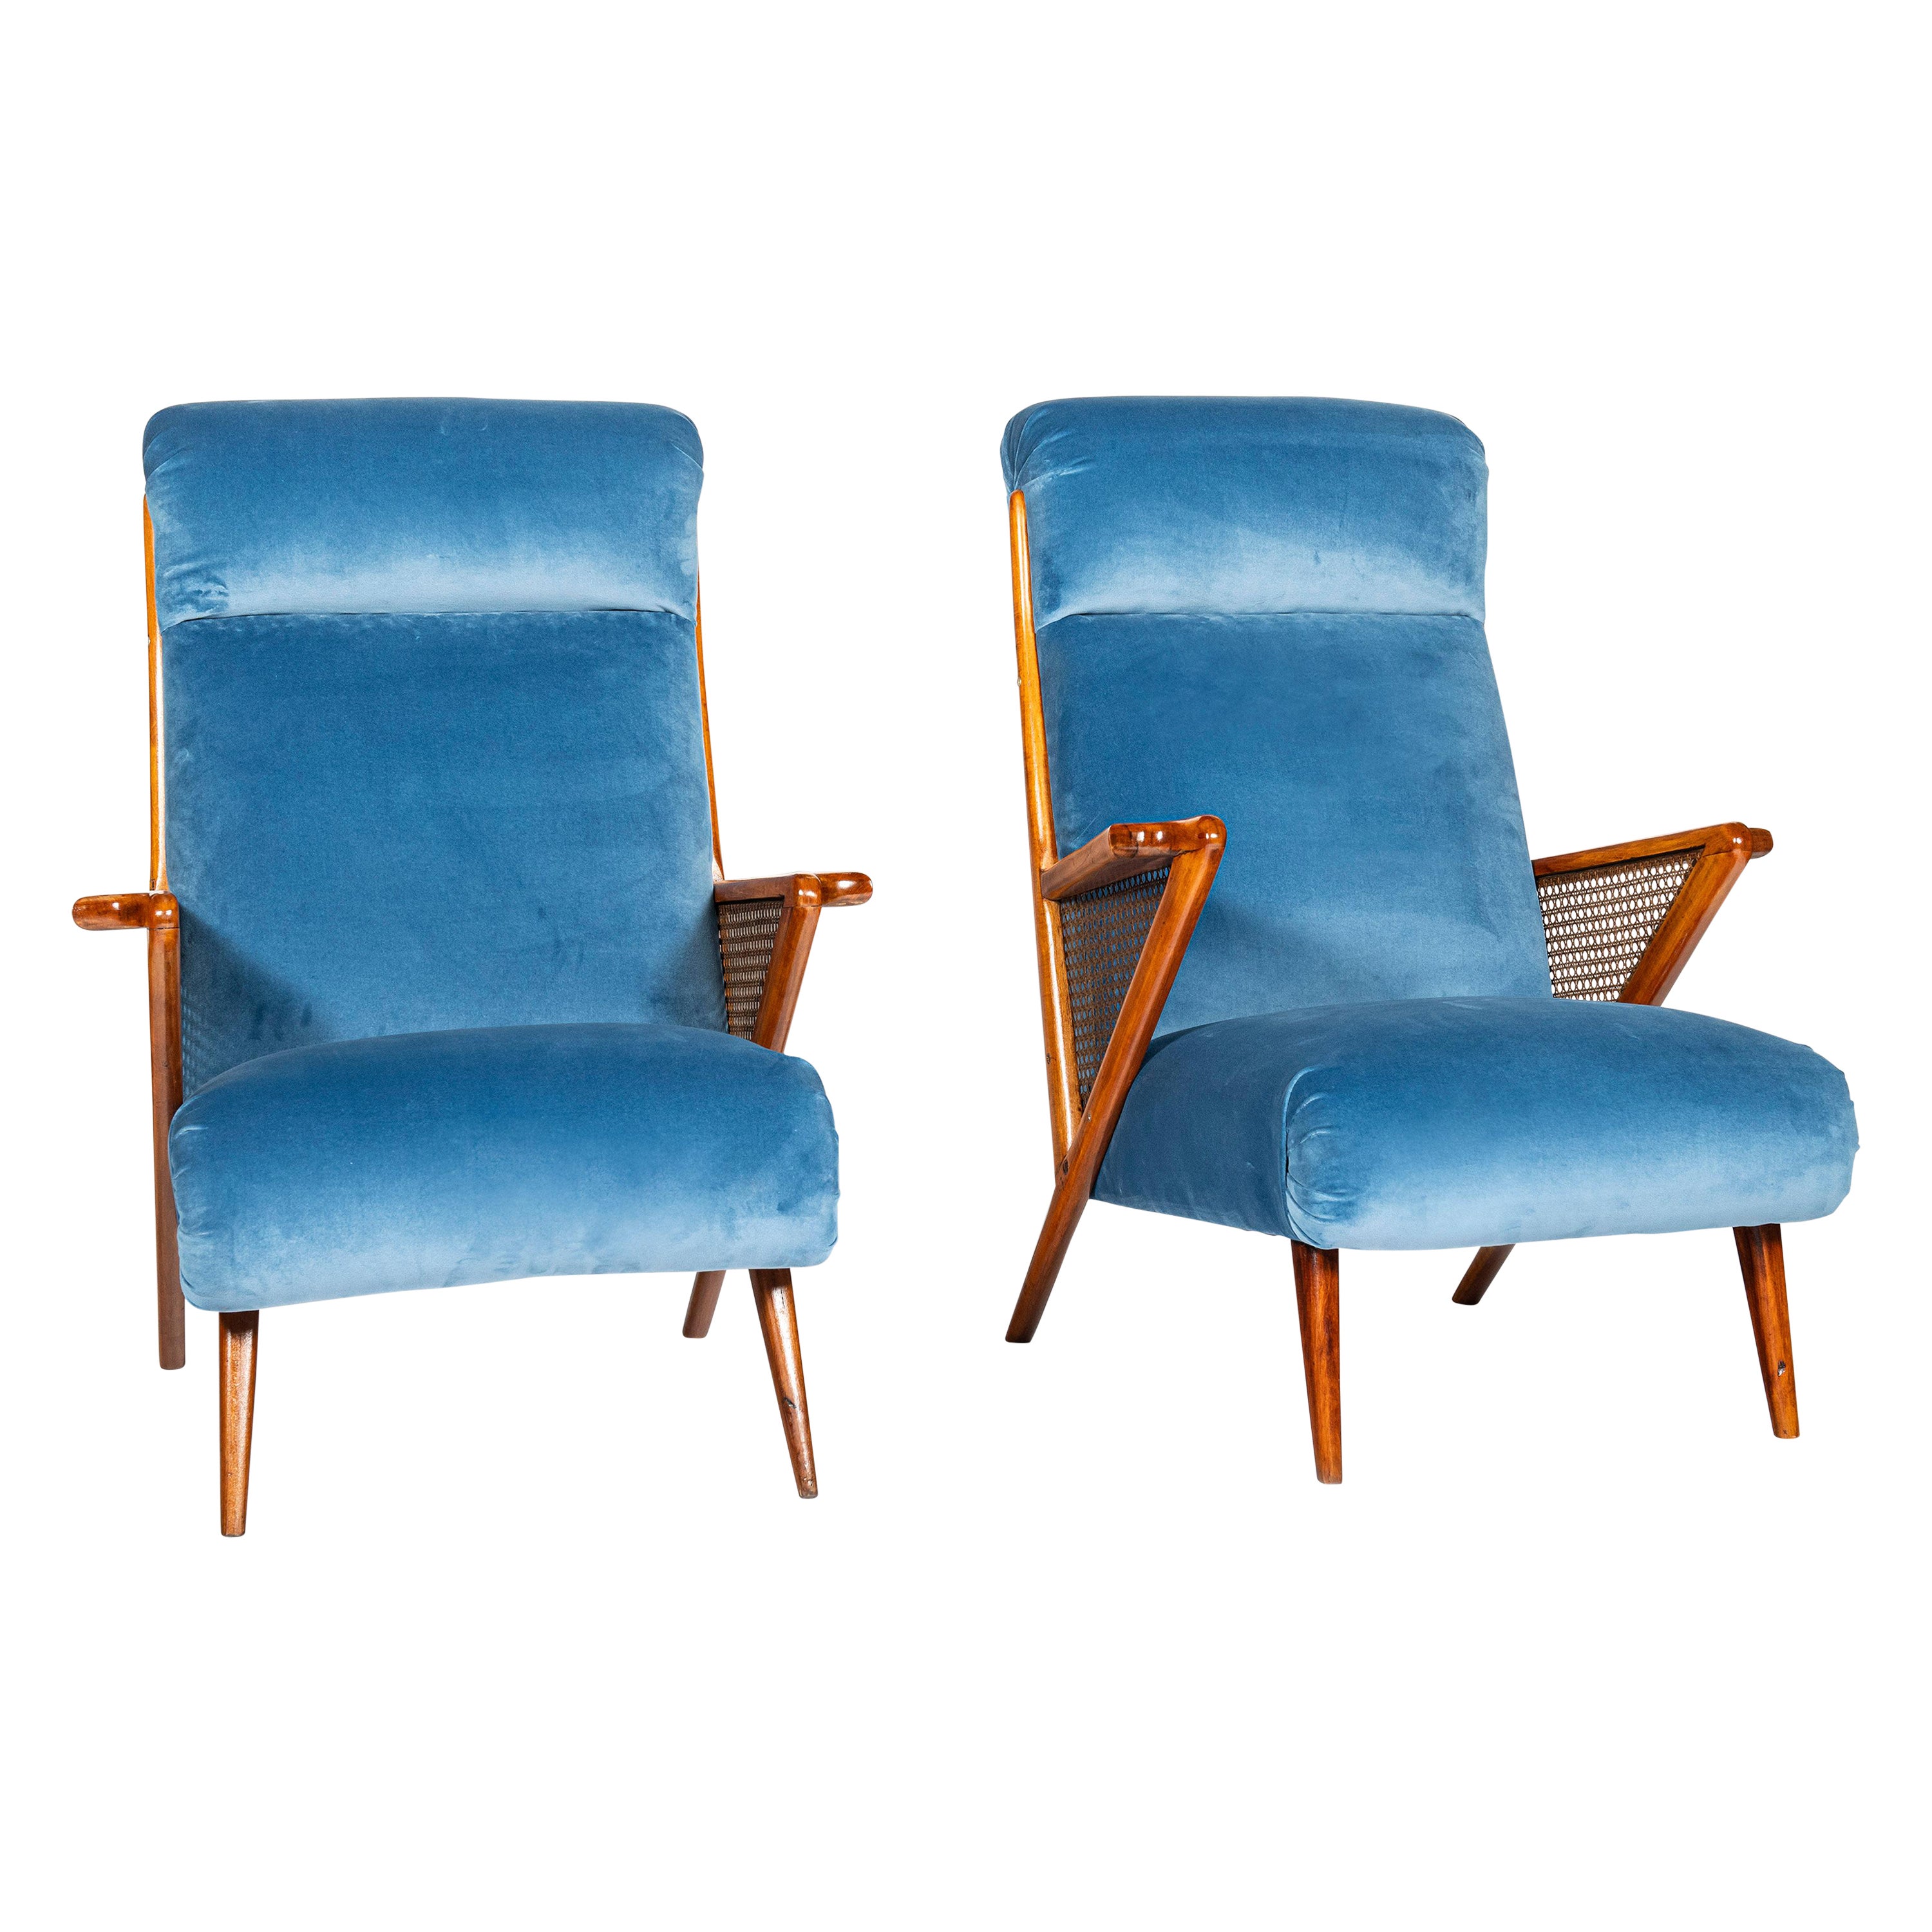 Paire de fauteuils scandinaves en bois, velours et rotin, datant d'environ 1950